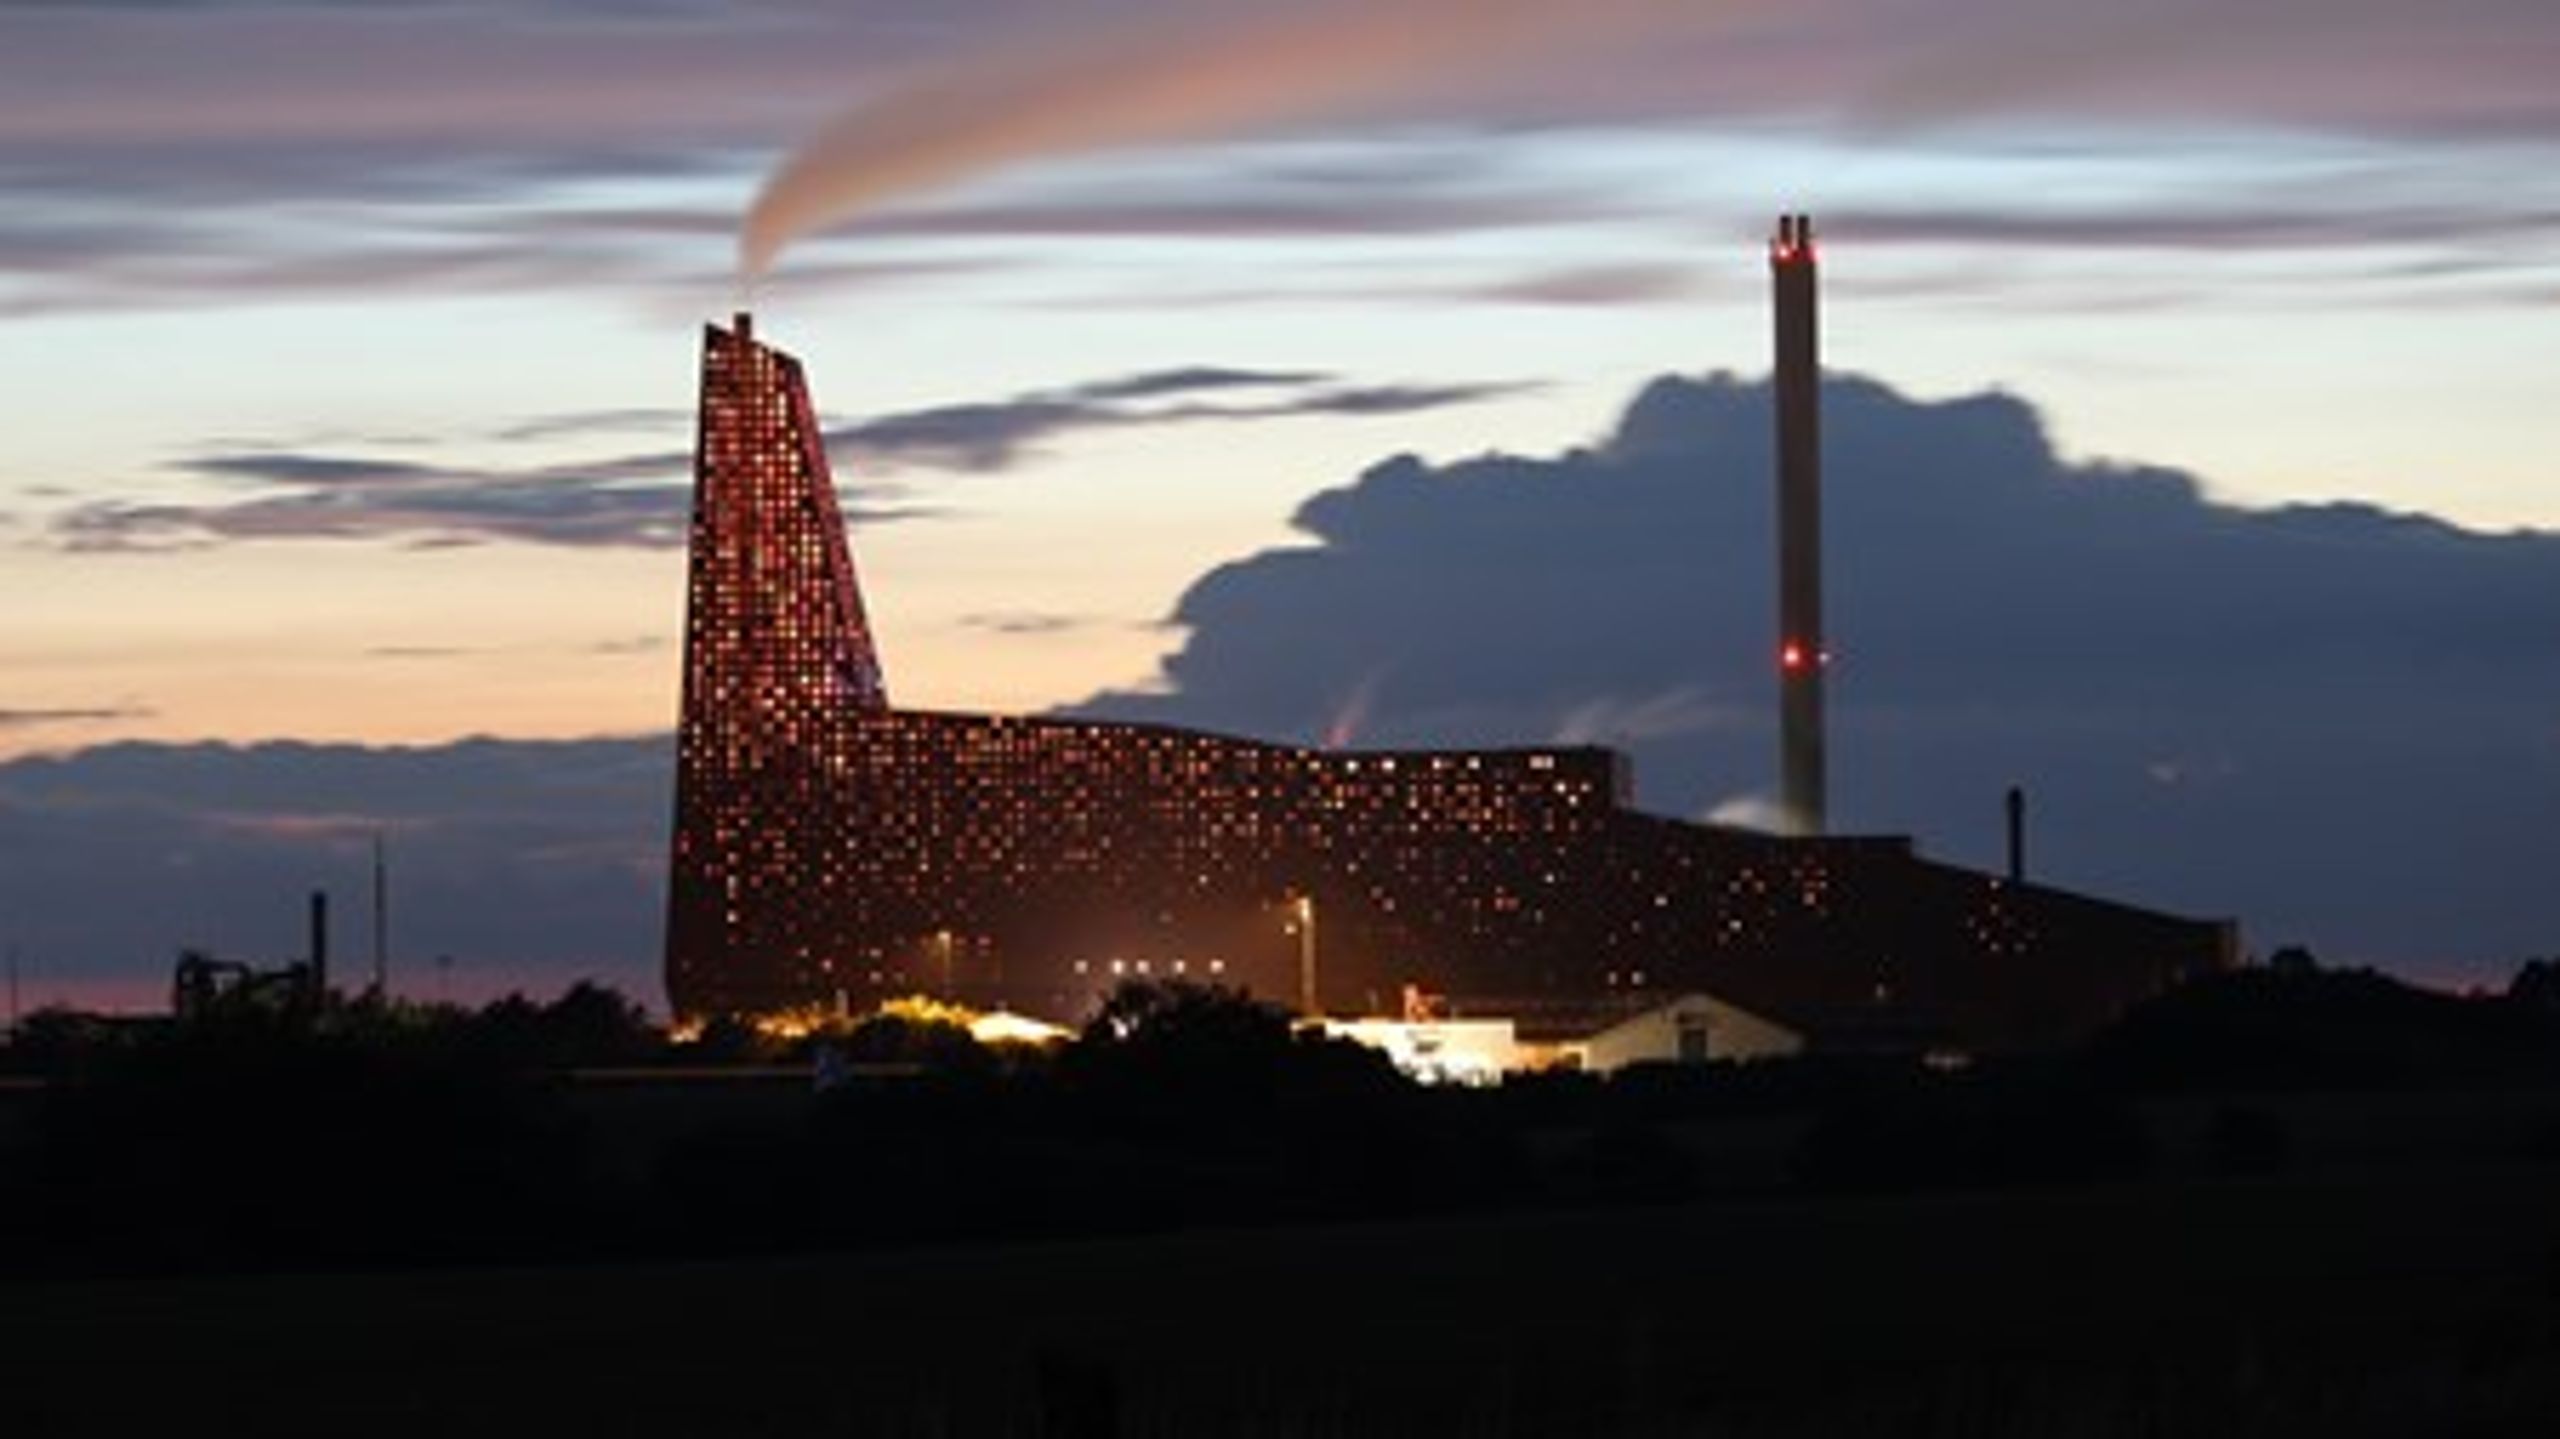 Danske forbrændingsanlæg som her&nbsp;Kara Novoren i Roskilde tjener gode penge på at importere affald fra udlandet. Men den praksis kan skade CO2-regnskabet, advarer Klimarådet.